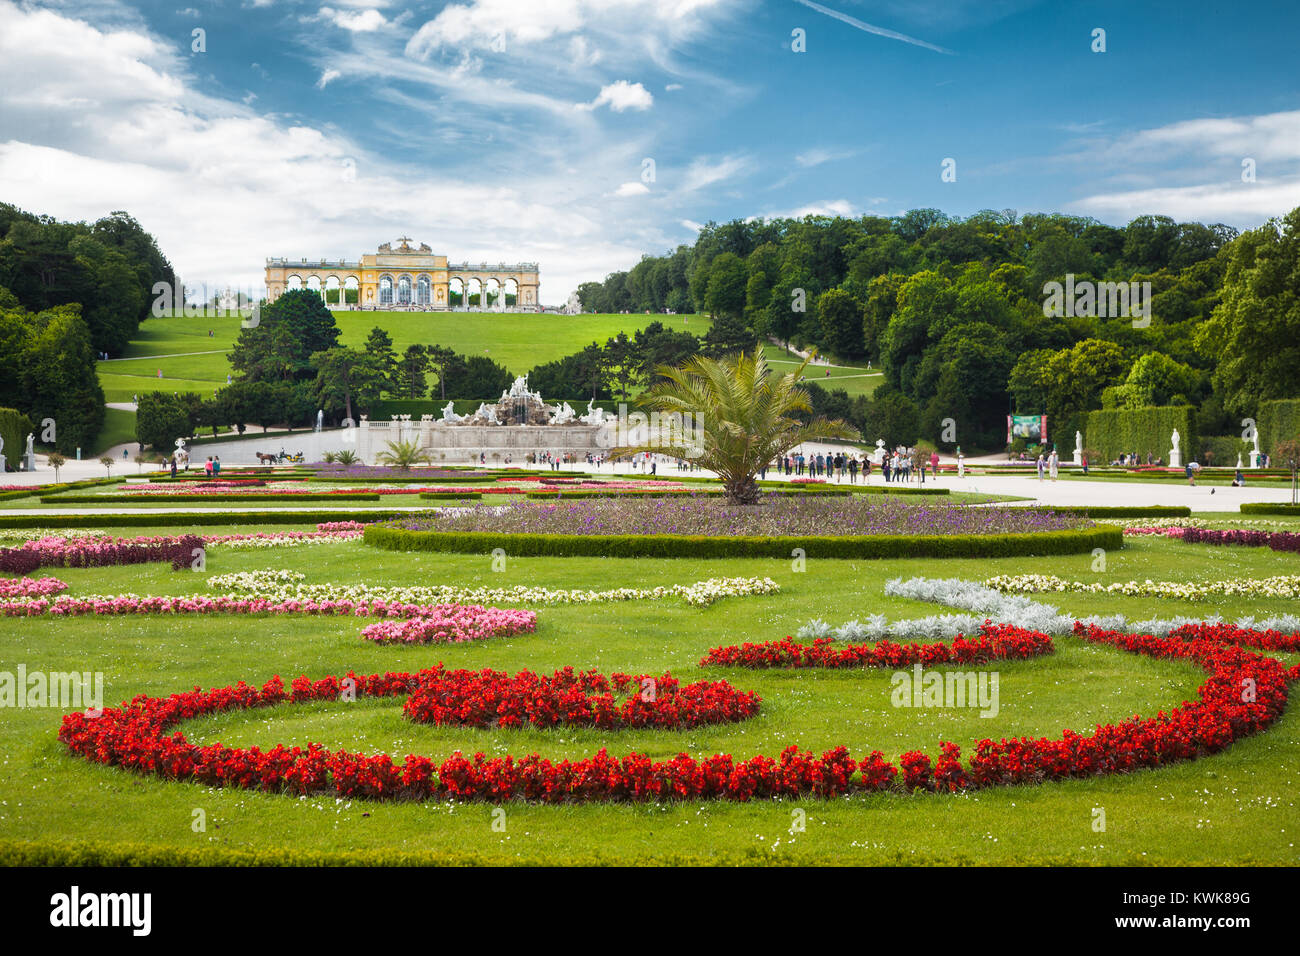 Visualizzazione classica di scenic grande parterre con giardino Gloriette su una collina al famoso Palazzo di Schonbrunn in una bella giornata di sole in estate, Vienna, Austria Foto Stock